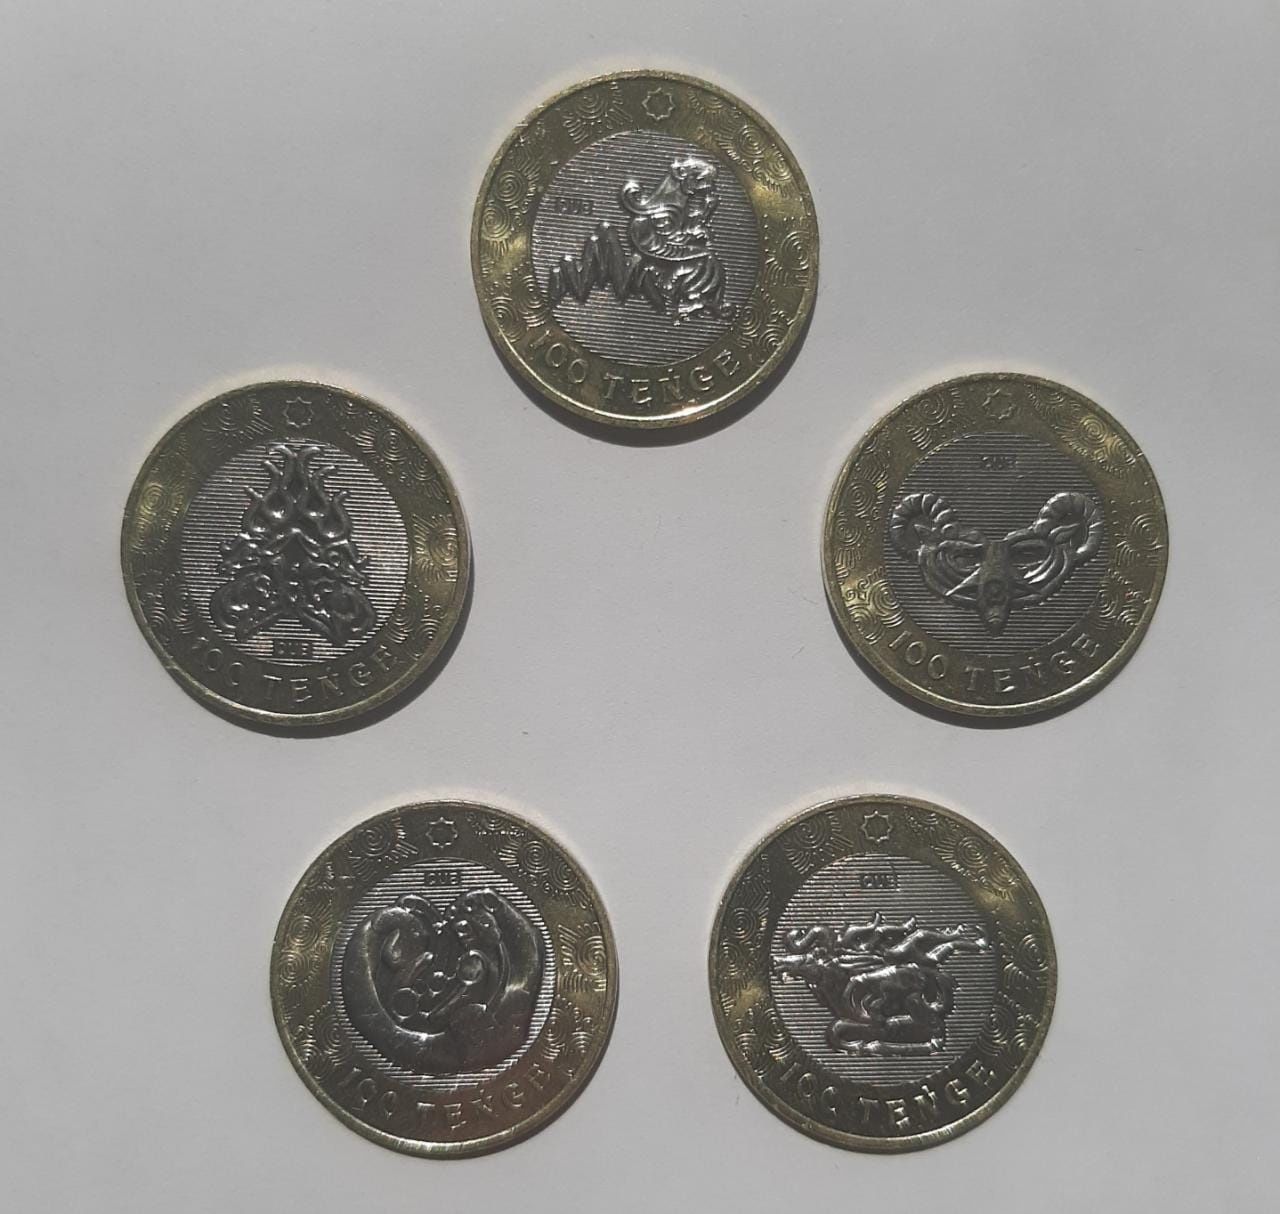 Коллекционные монеты 100 тенге - сакский стиль (цена за набор)